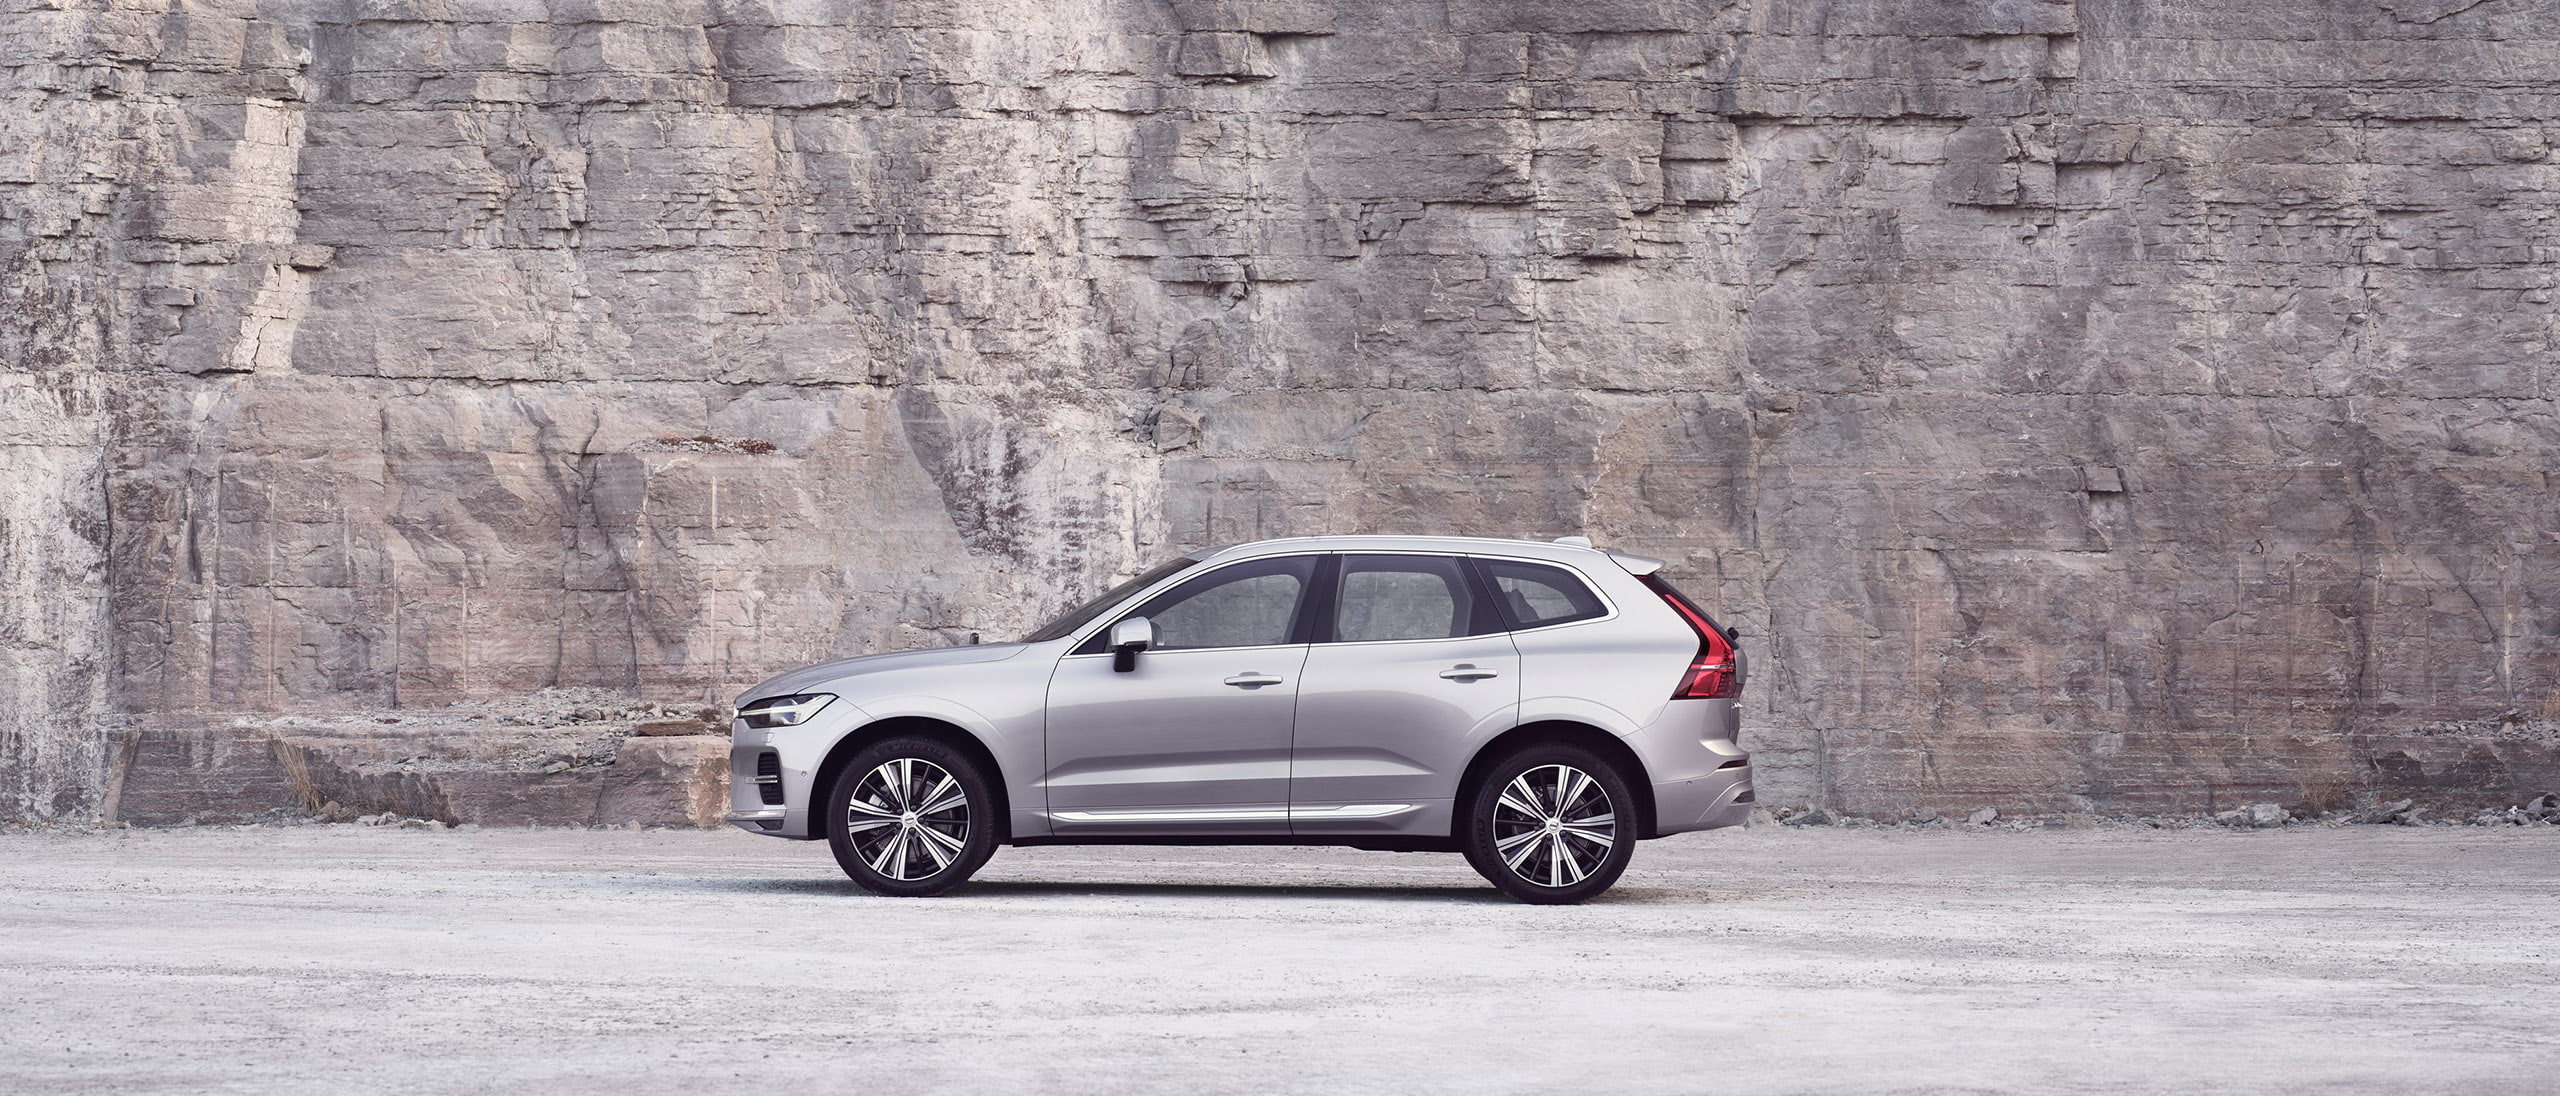 Een zilverkleurige Volvo XC60 staat stil voor een rotswand.